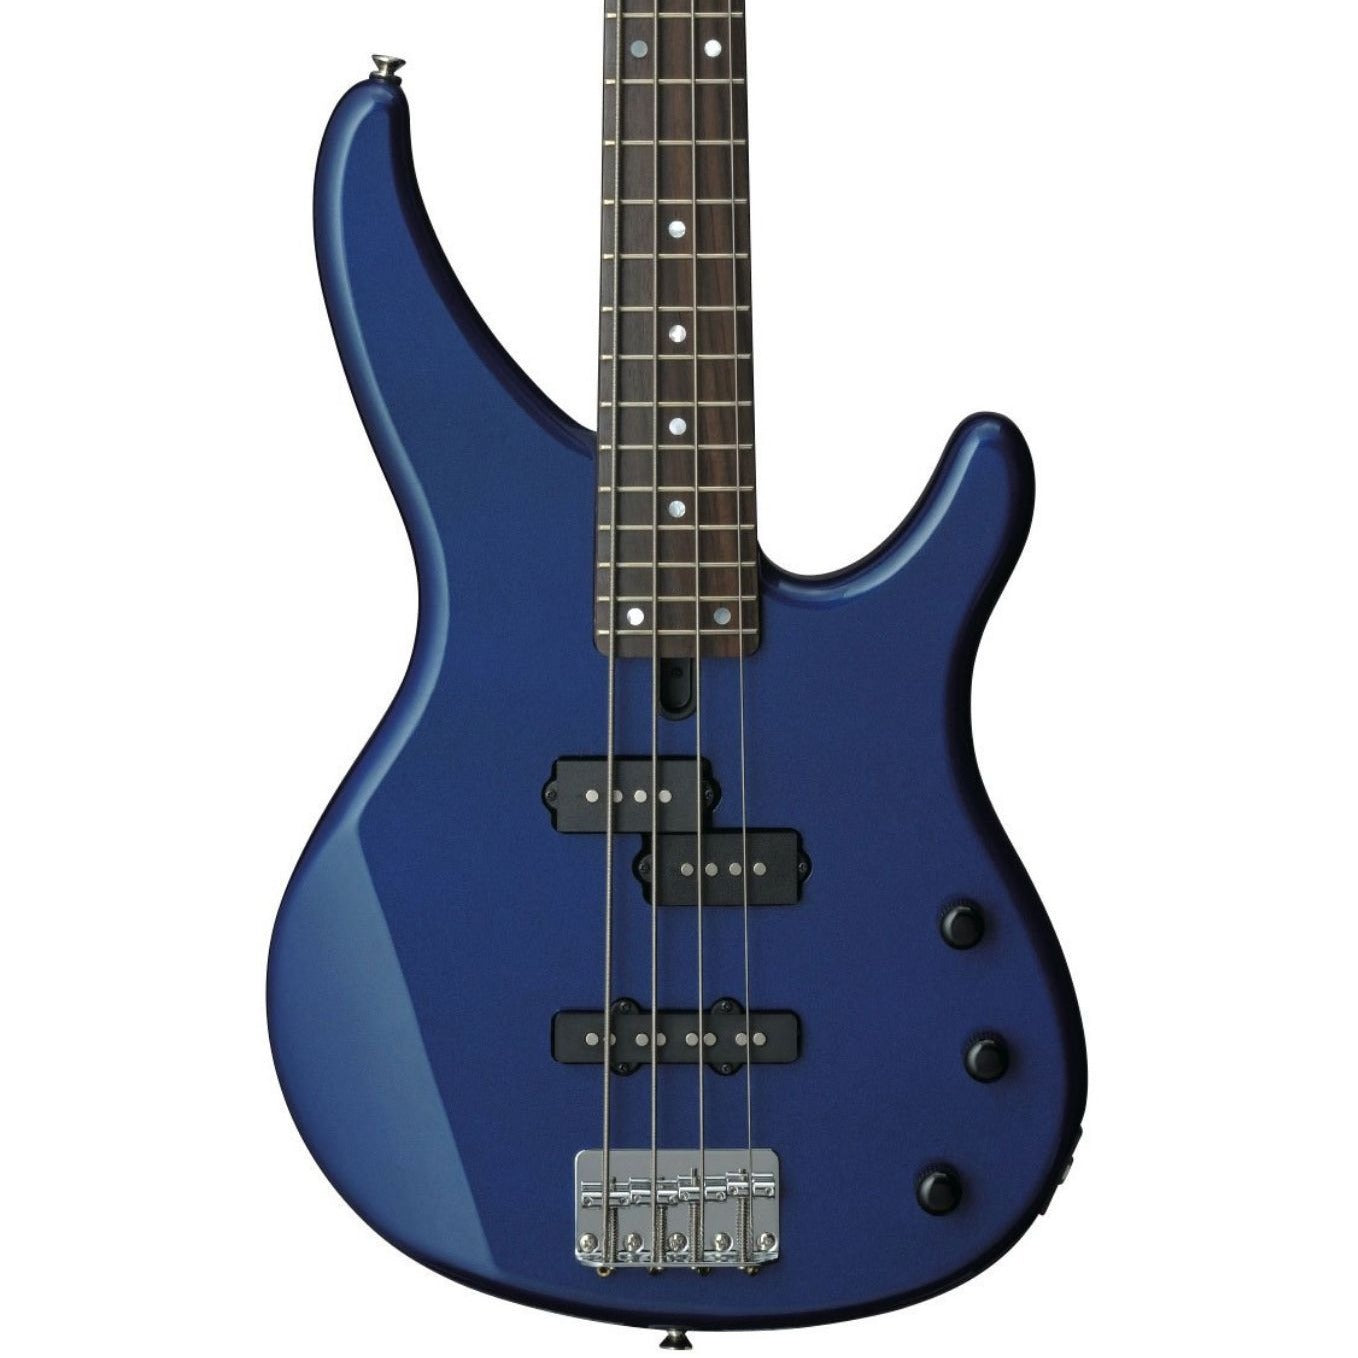 Yamaha TRBX174 Bass Guitar, Blue Metallic